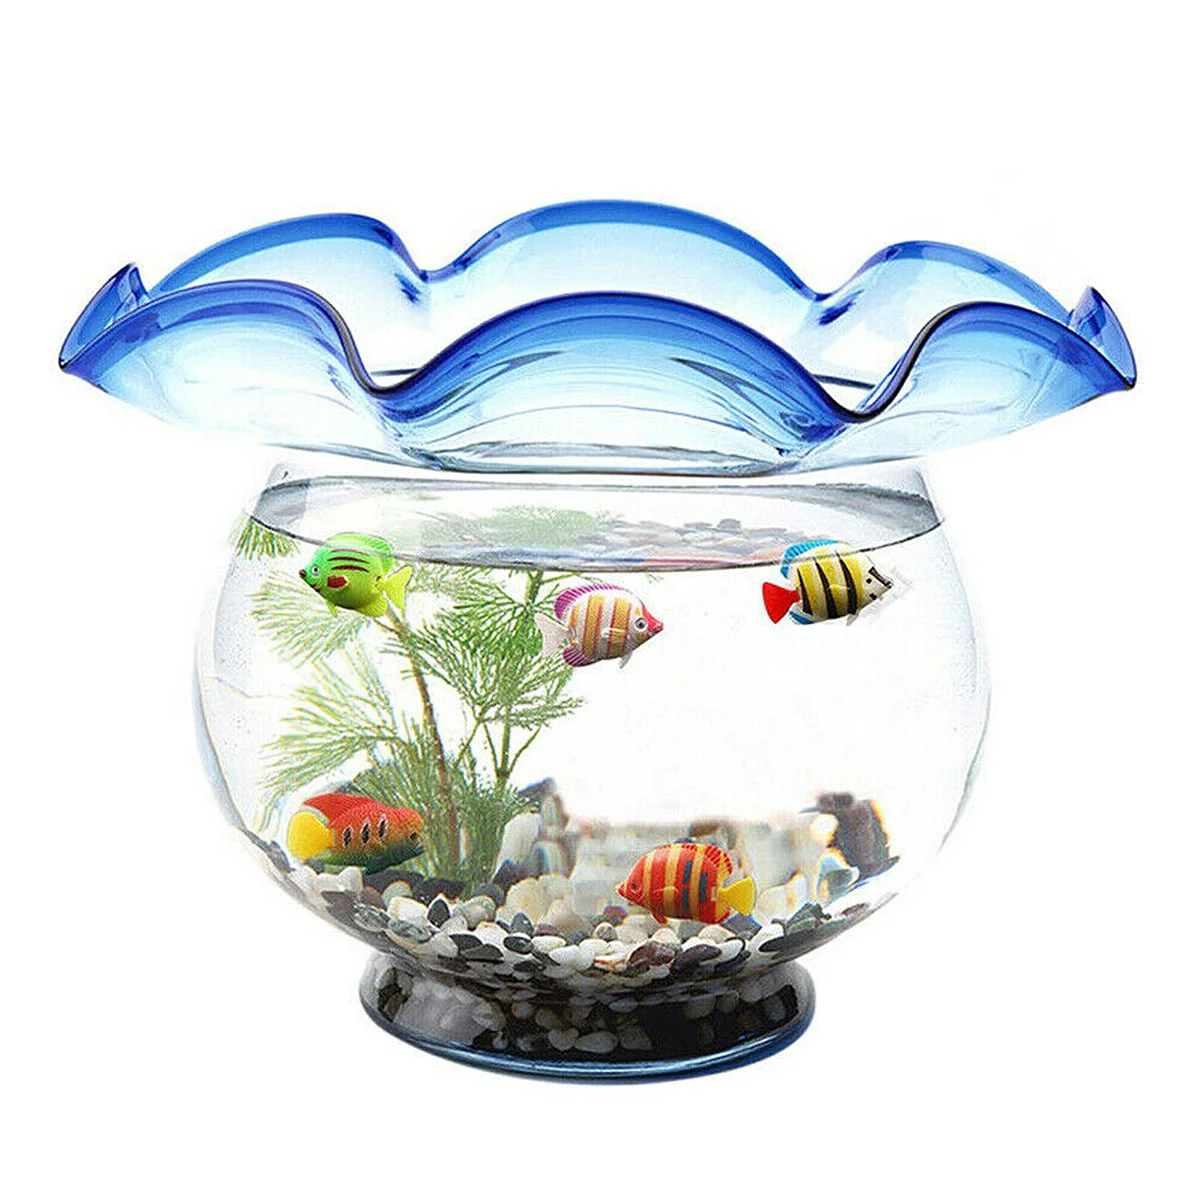 Купить живых рыбок для аквариума. Аквариум с искусственными рыбками. Пластиковый аквариум для рыбок. Декоративный аквариум с искусственными. Пластмассовые рыбки для аквариума.